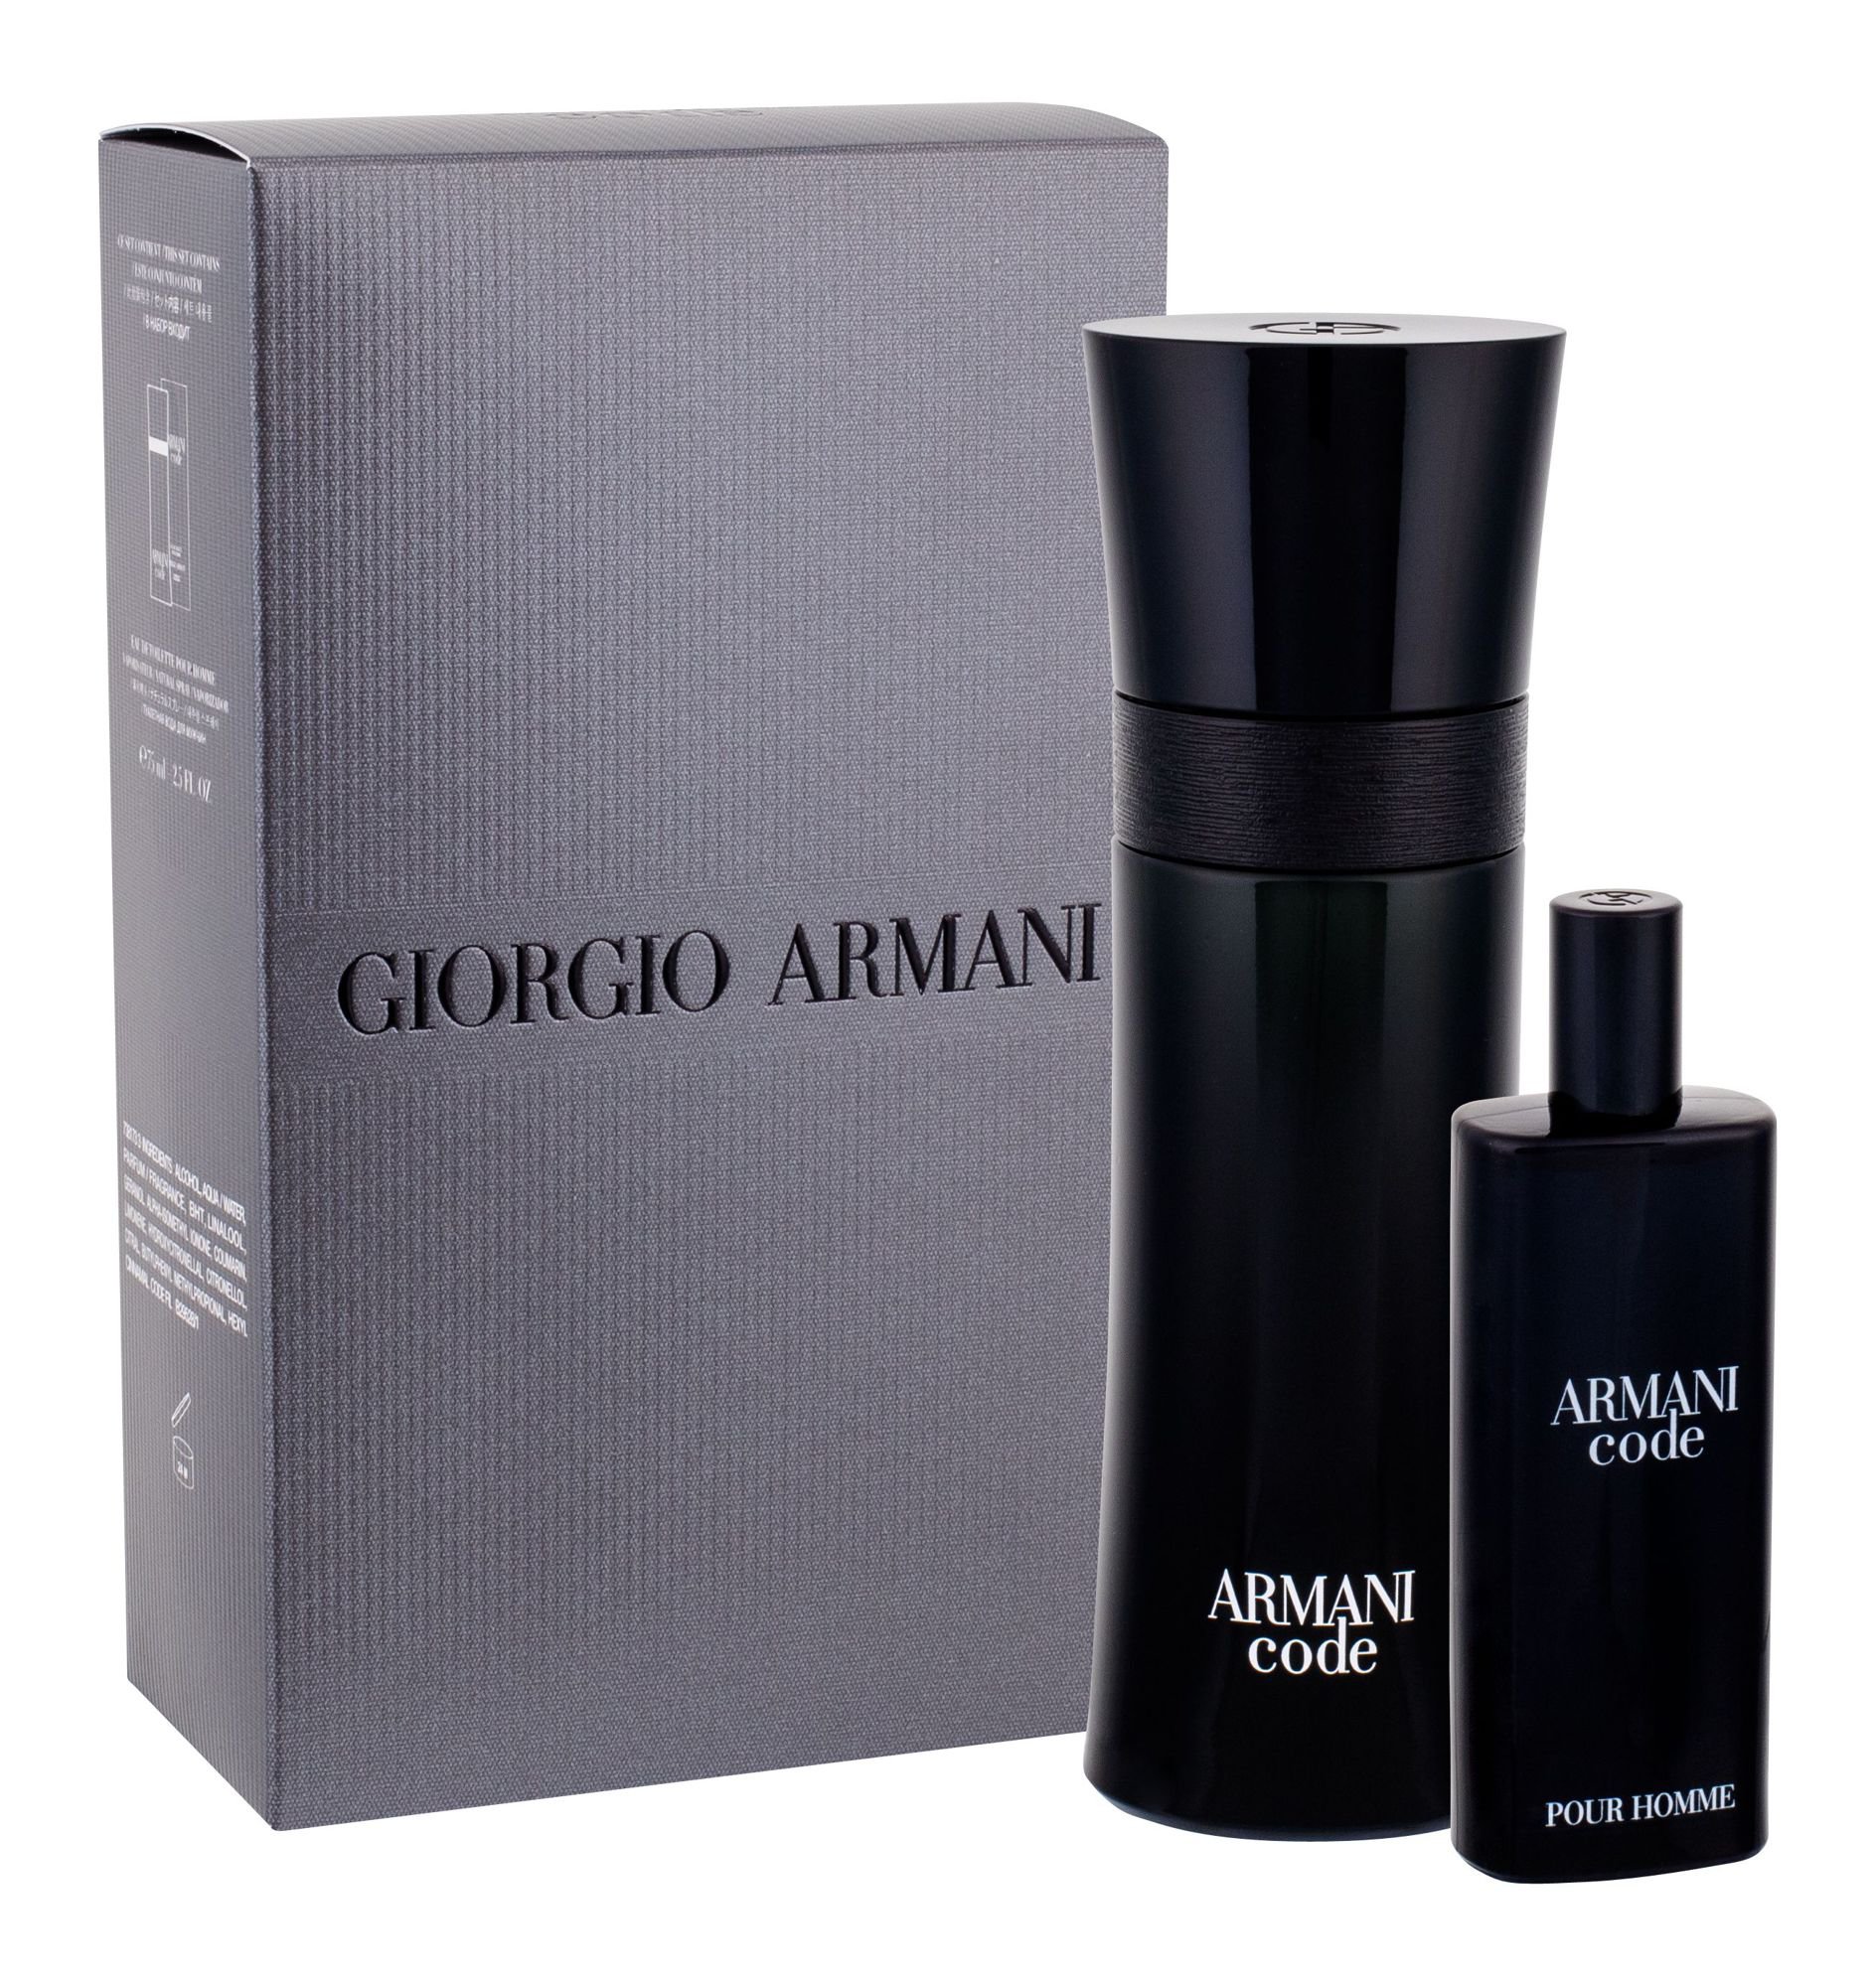 Giorgio Armani Armani Code Pour Homme, edt 75 ml + edt 15 ml